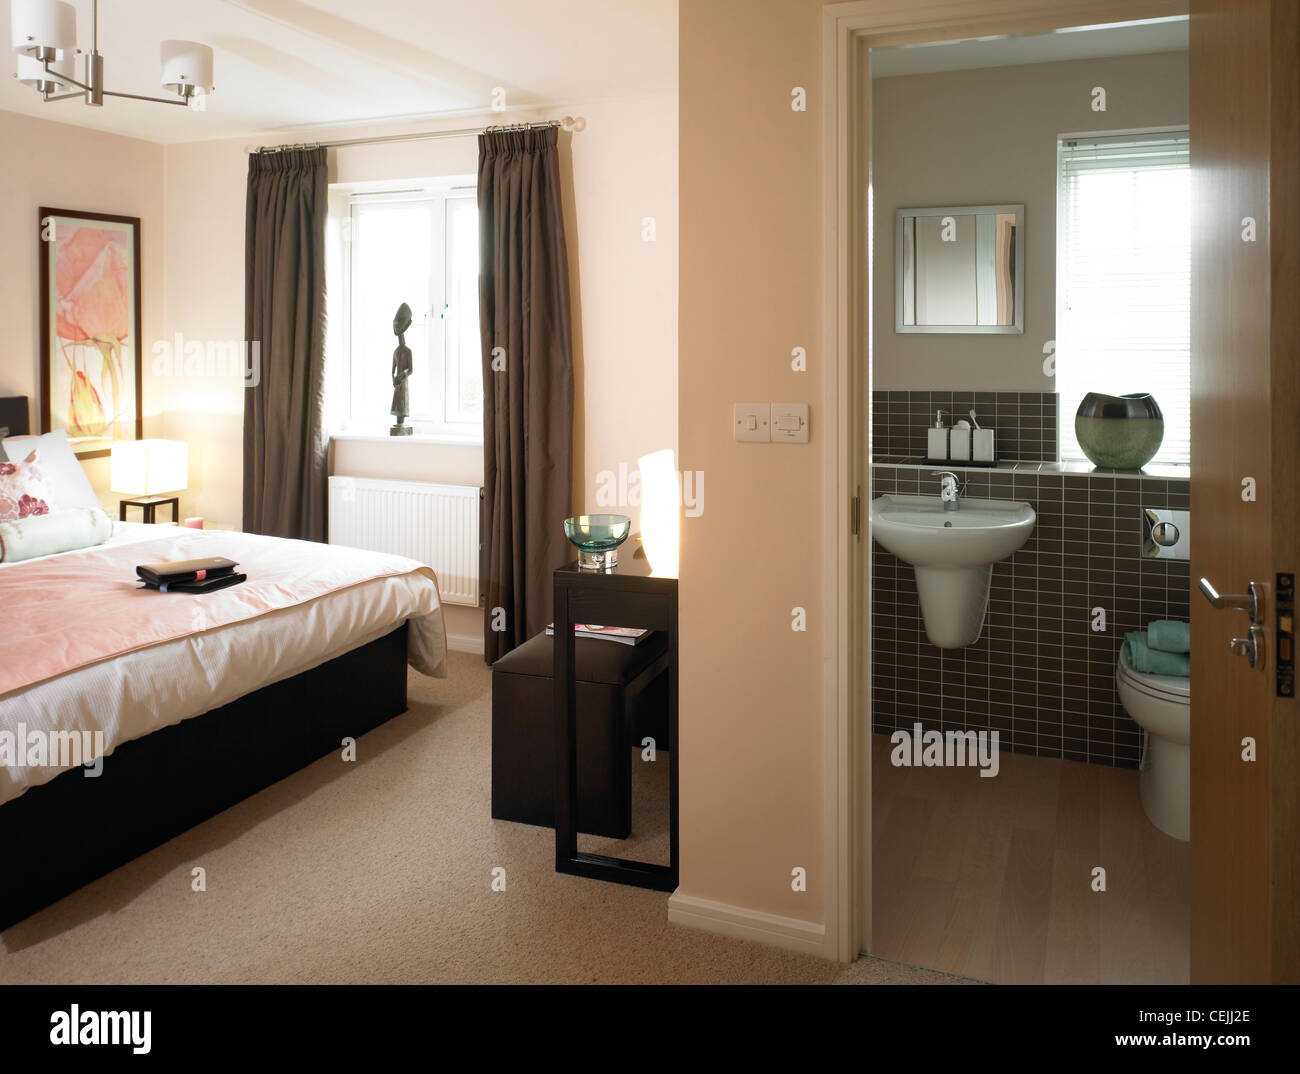 Double bedroom and en-suite bathroom. Stock Photo